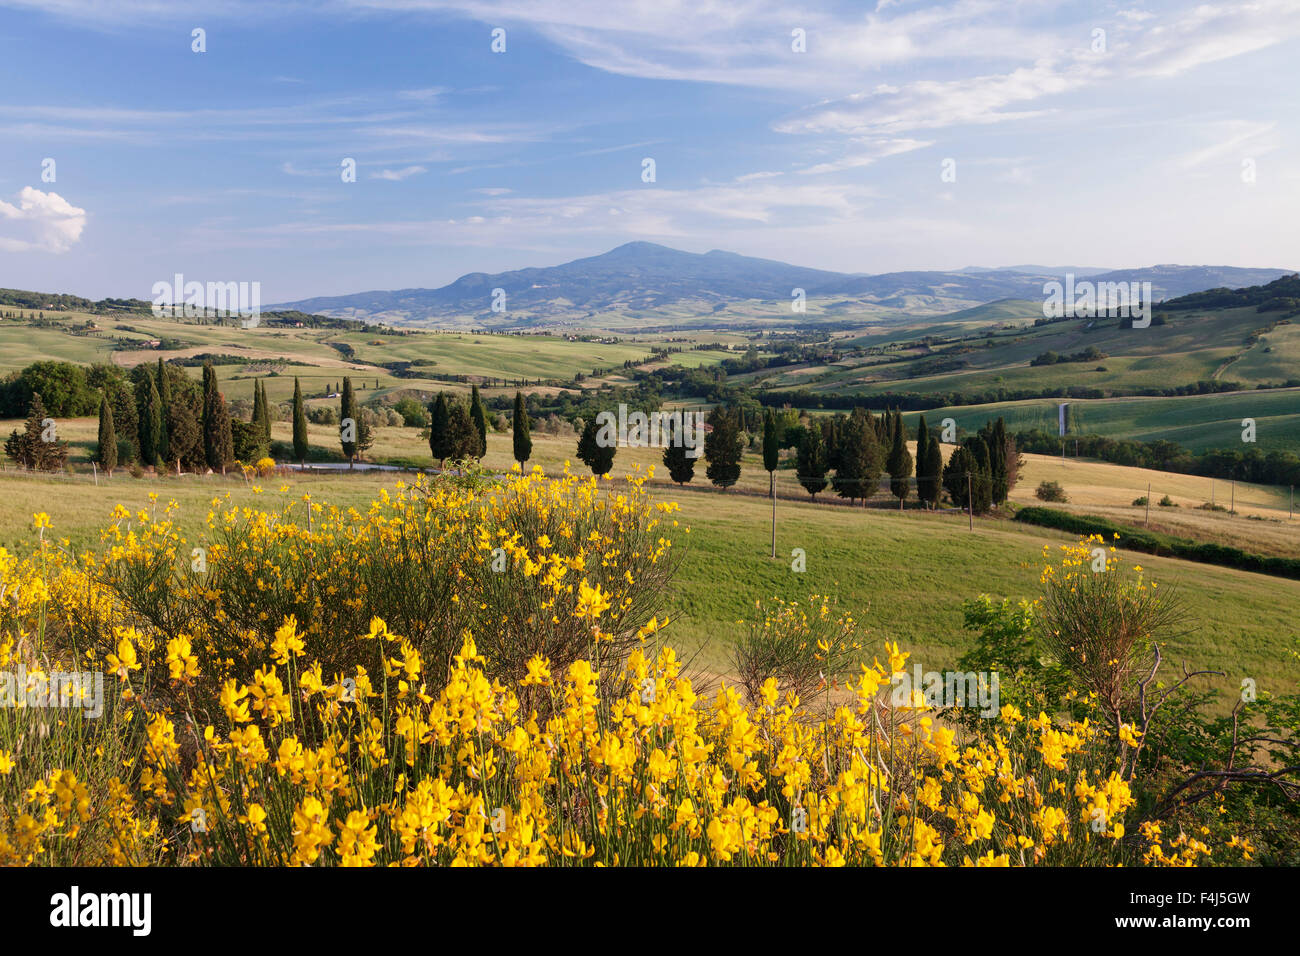 Paysage toscan avec Monte Amiata, près de Pienza, Val d'Orcia (Val d'Orcia), site du patrimoine mondial de l'UNESCO, la province de Sienne, Toscane Banque D'Images